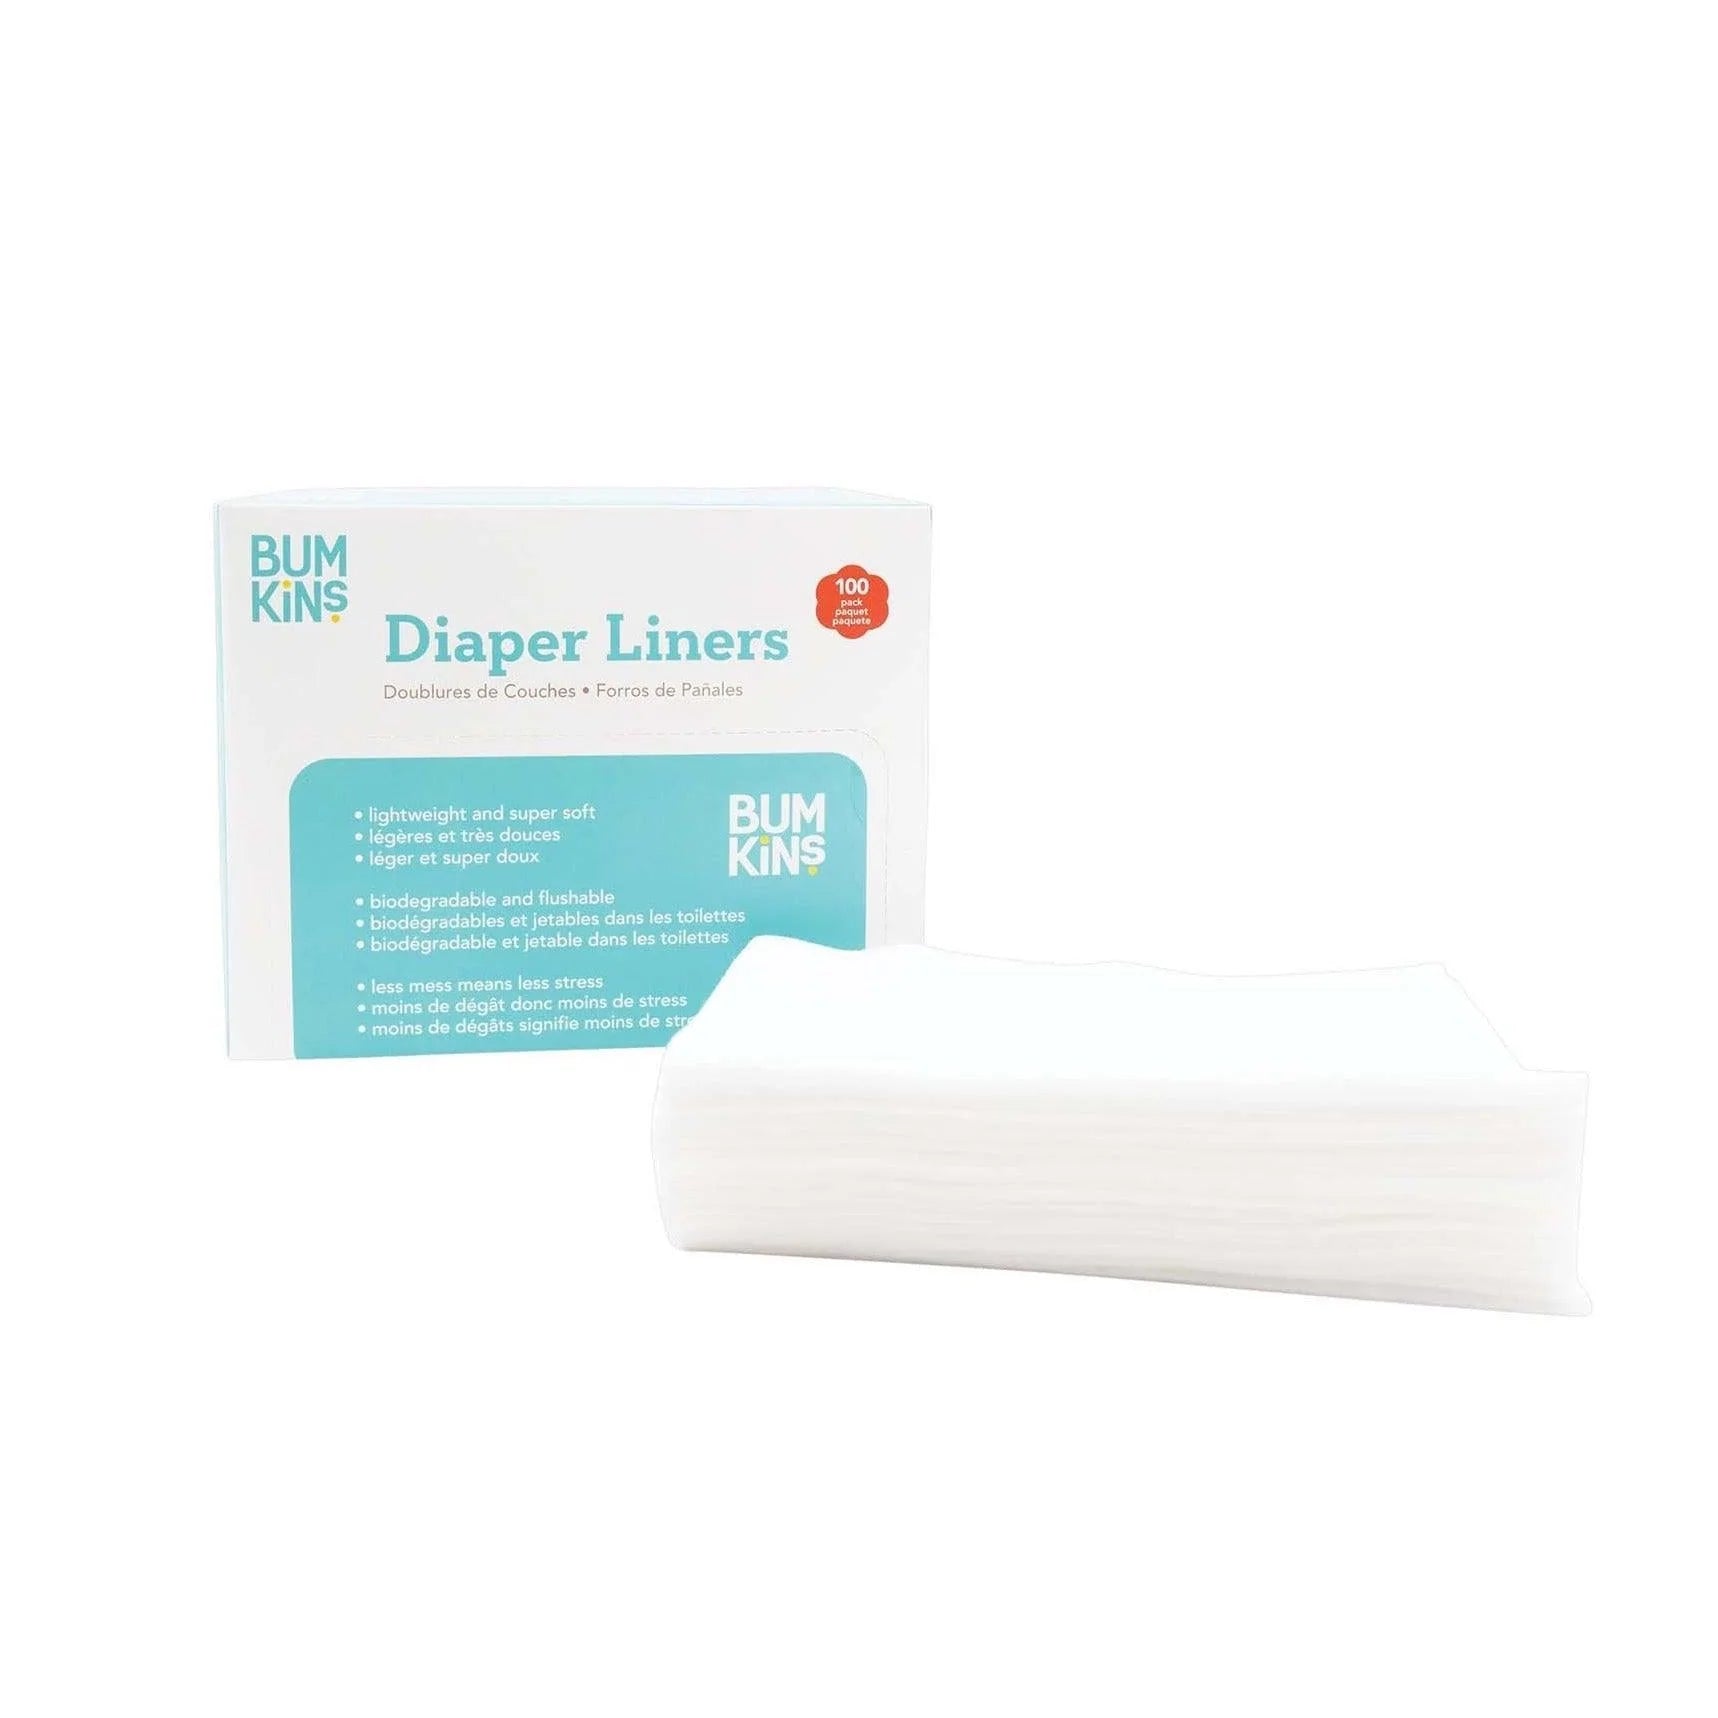 Diaper Liners - Bumkins